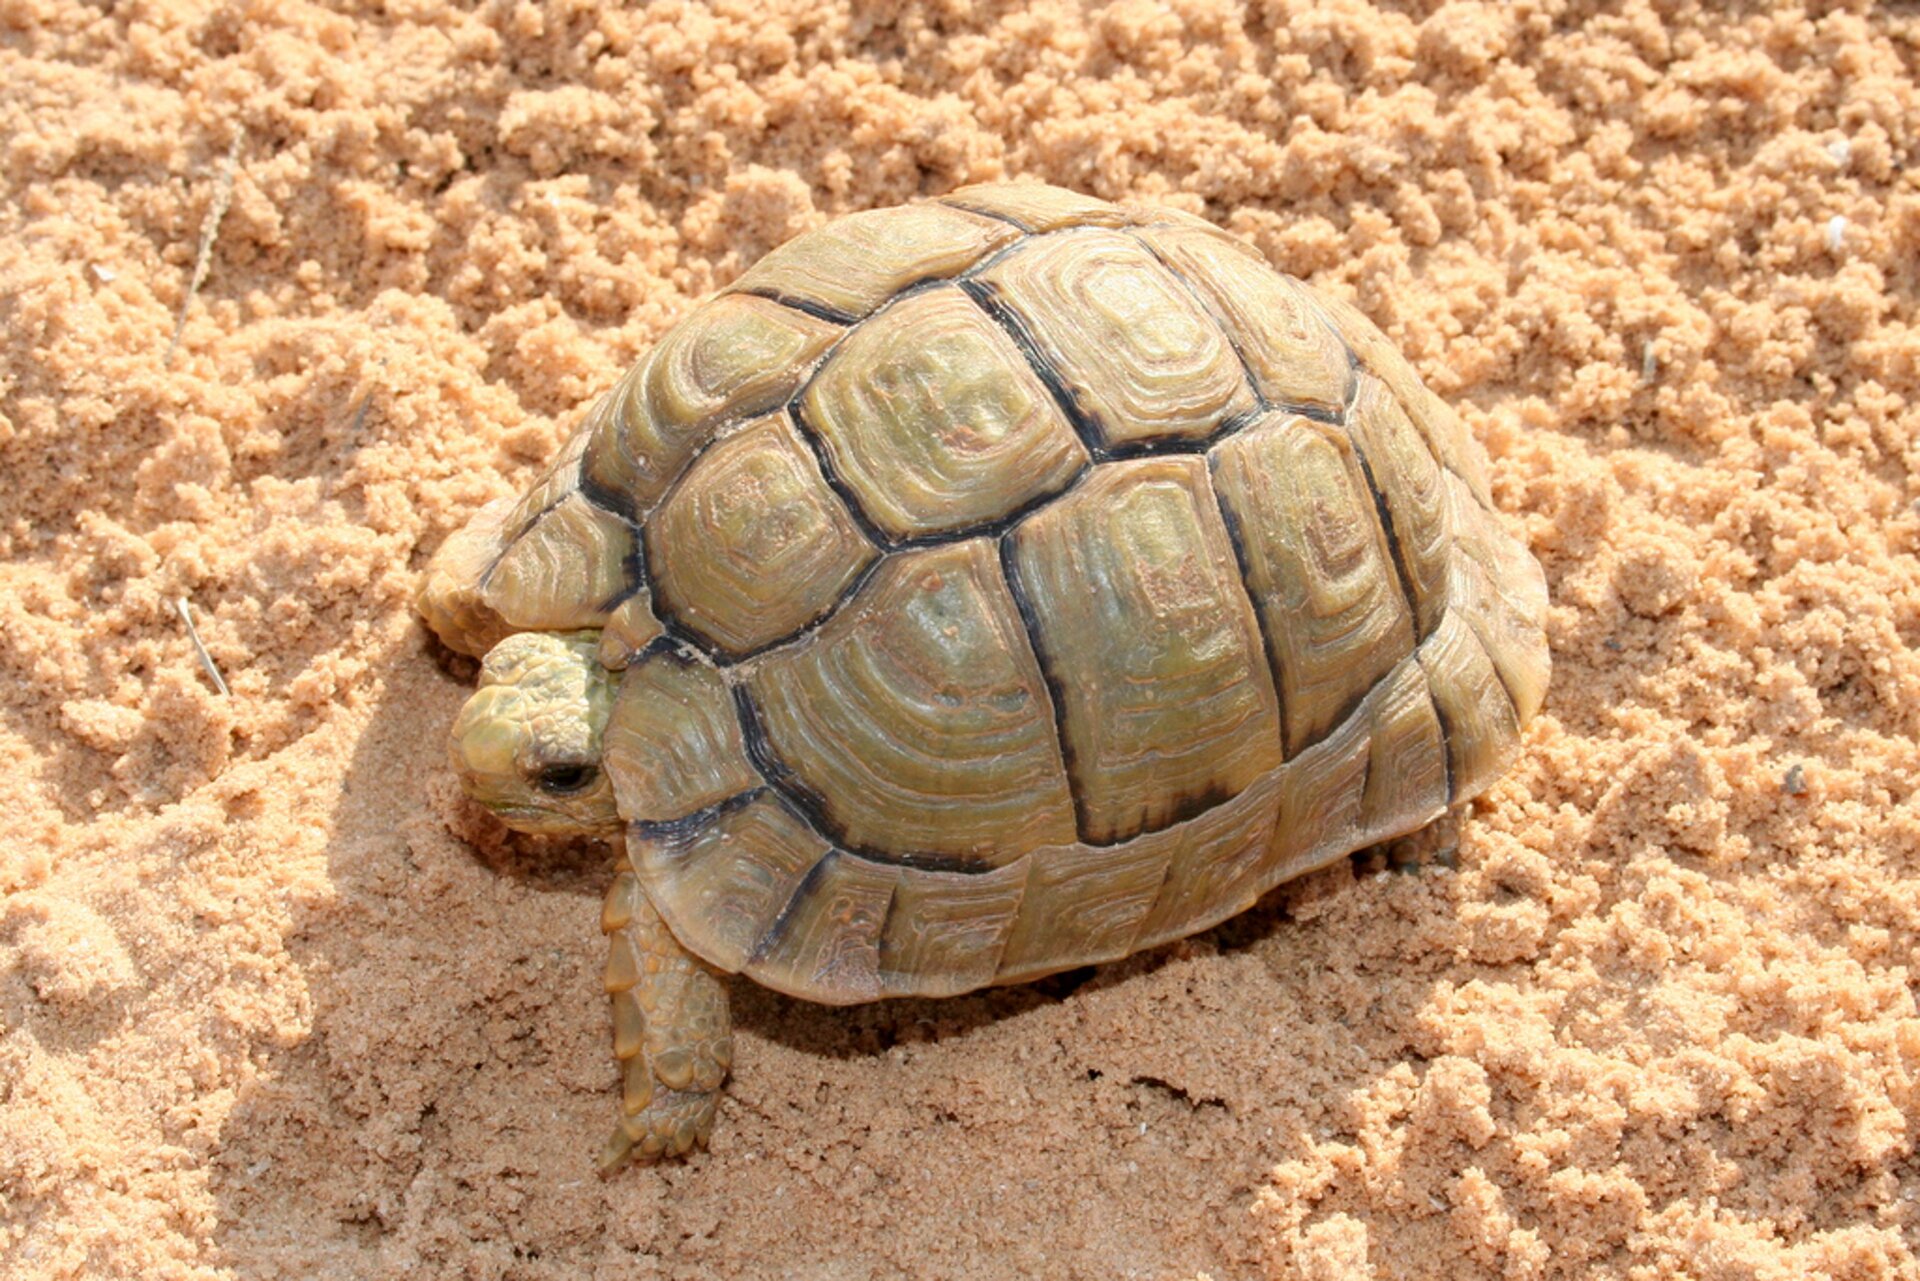 Ilustracja przedstawia żółwia na piasku. Żółw ma charakterystyczne wycięcie w skorupie nad głową. Skorupa jasna, żółtobrązowa. Obrzeża płytek grzbietowych, tworzących skorupę, z widocznie ciemniejszą obwódką.